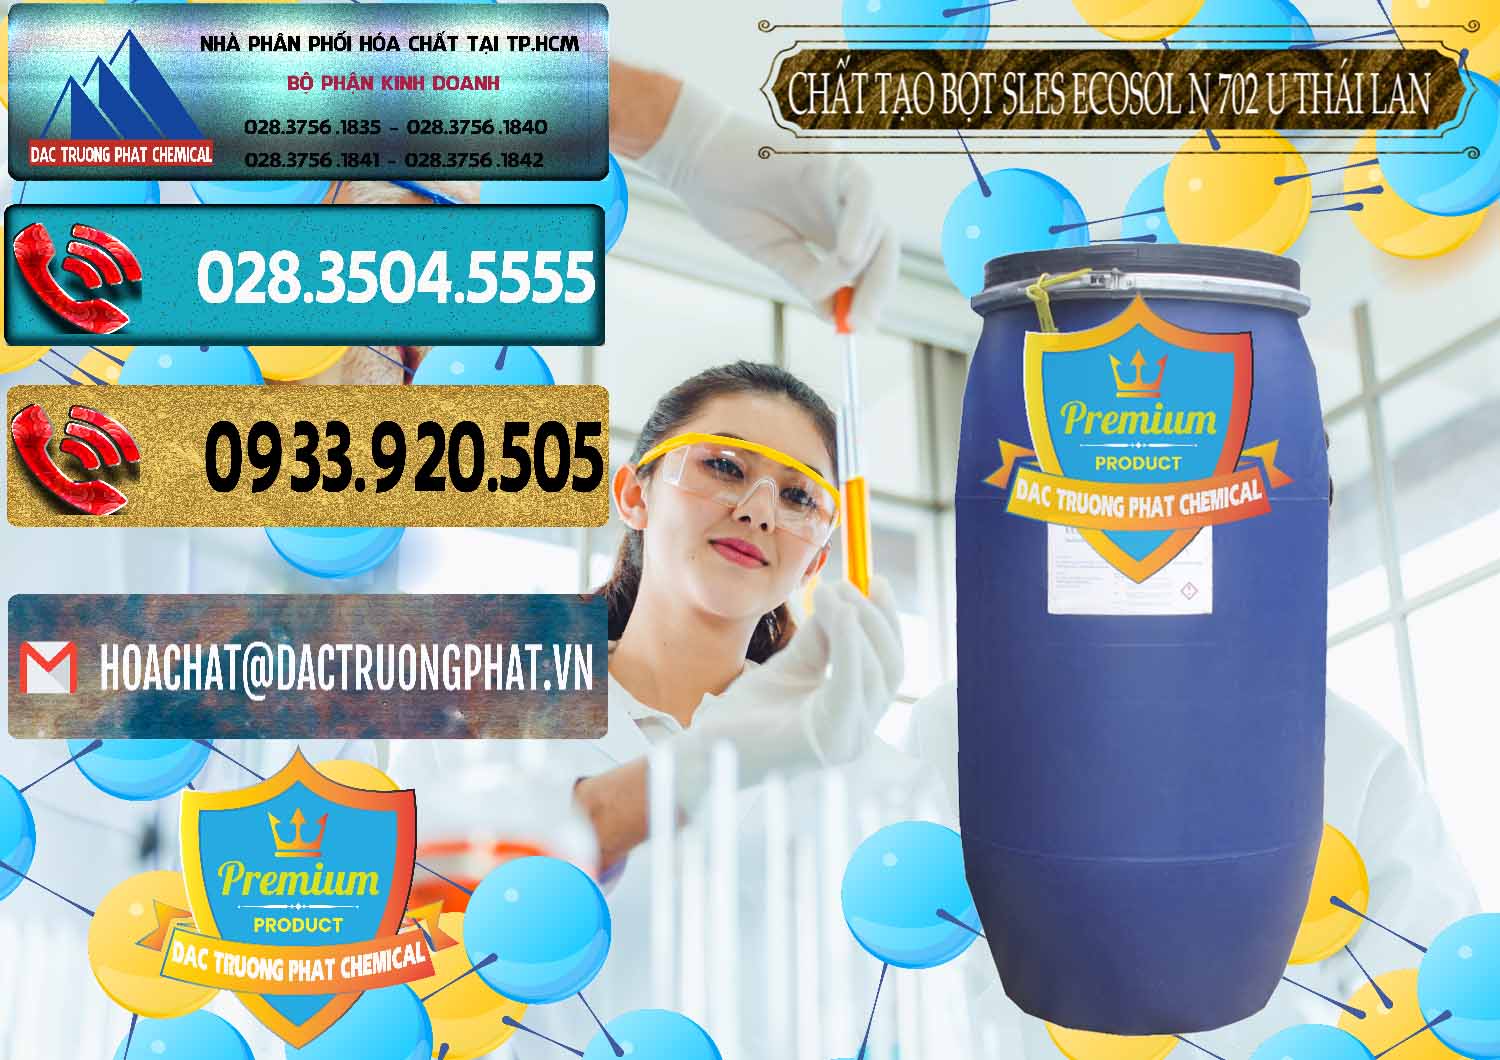 Nơi chuyên bán - cung ứng Chất Tạo Bọt Sles - Sodium Lauryl Ether Sulphate Ecosol N 702 U Thái Lan - 0254 - Cty cung cấp & phân phối hóa chất tại TP.HCM - hoachatdetnhuom.com